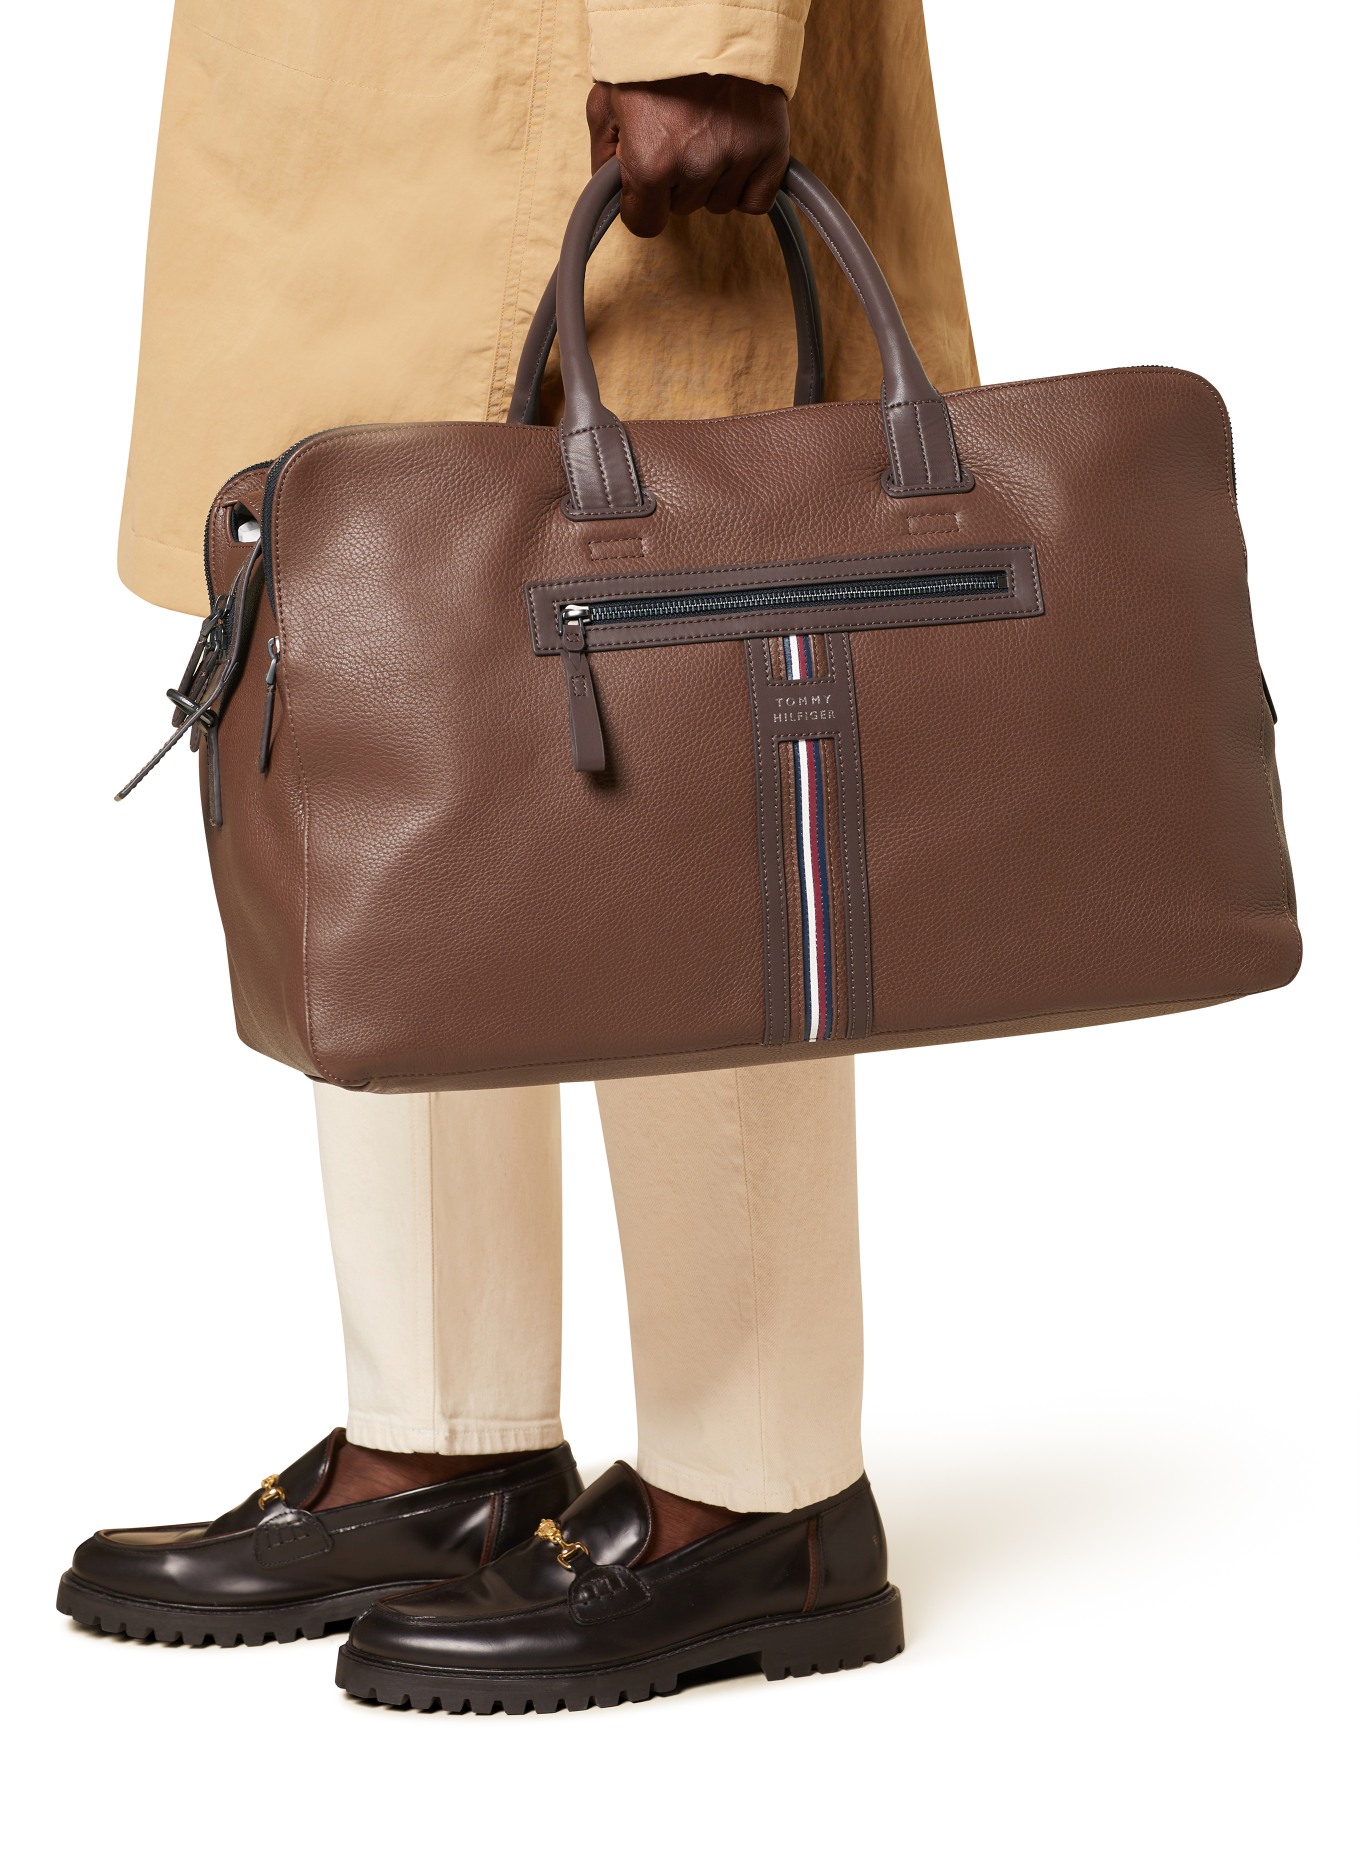 TOMMY HILFIGER Weekend Bag, Color: BROWN (Image 4)